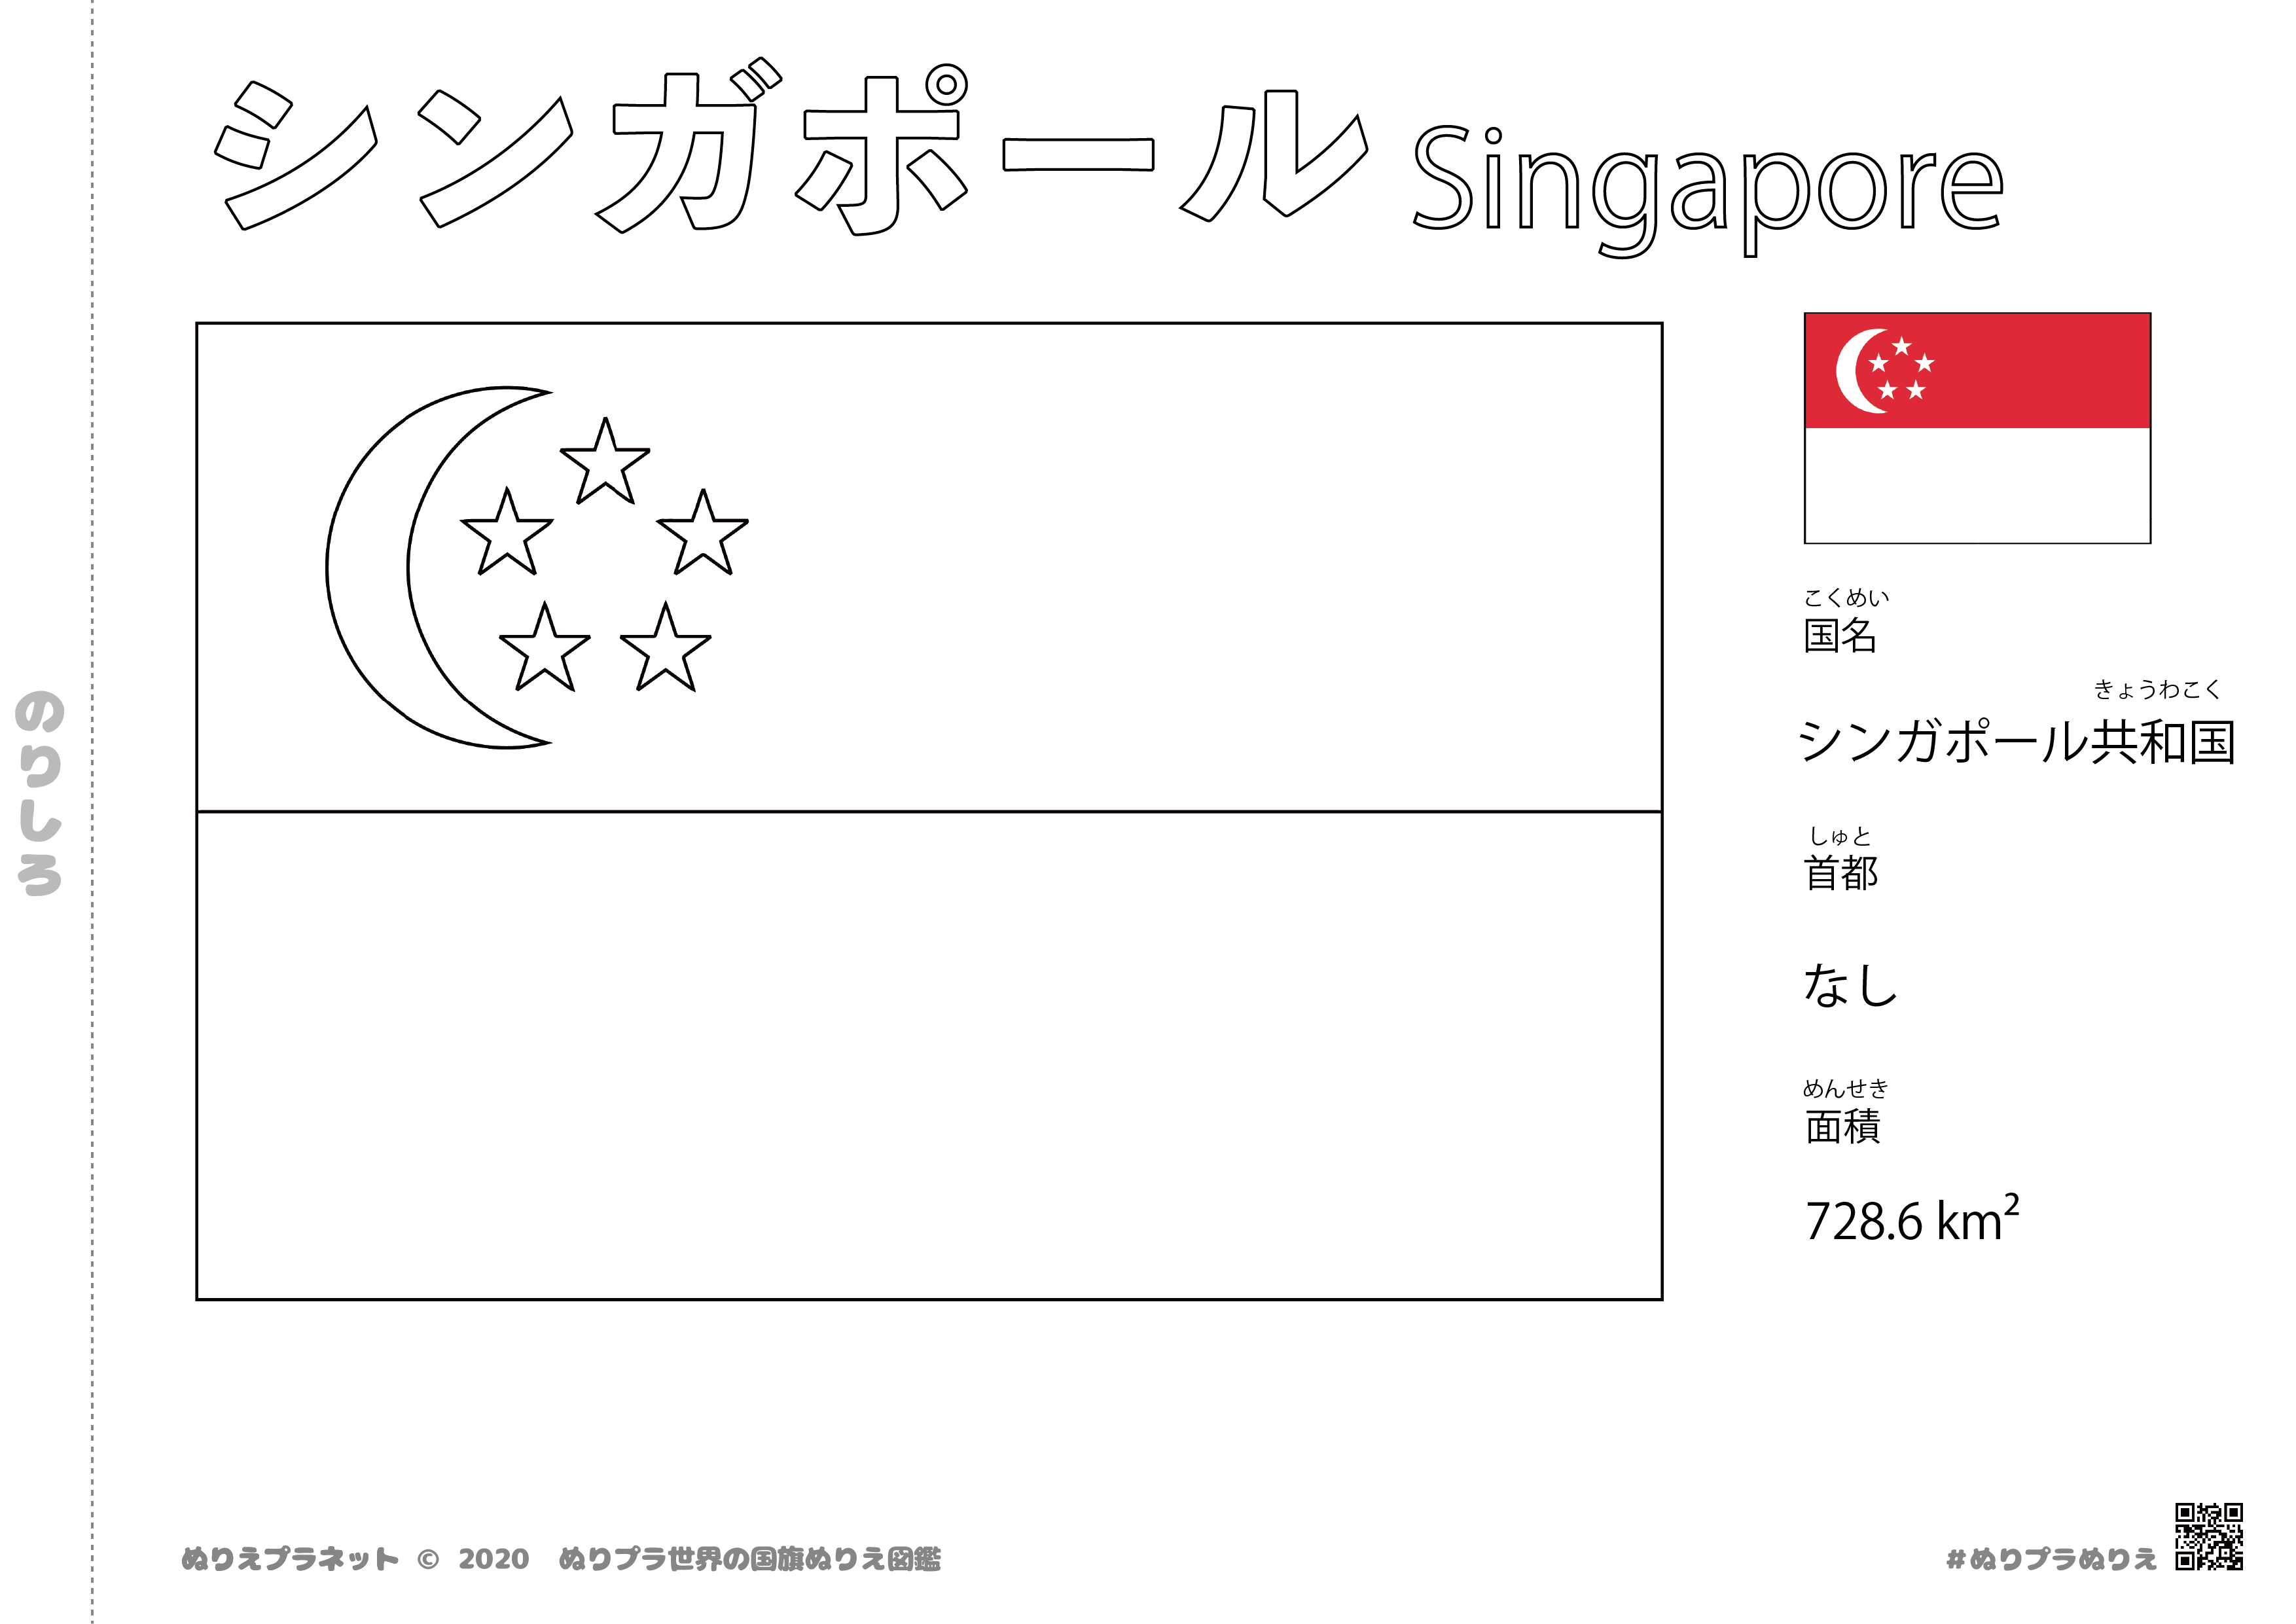 シンガポールの国旗のぬりえです。首都は無いです。